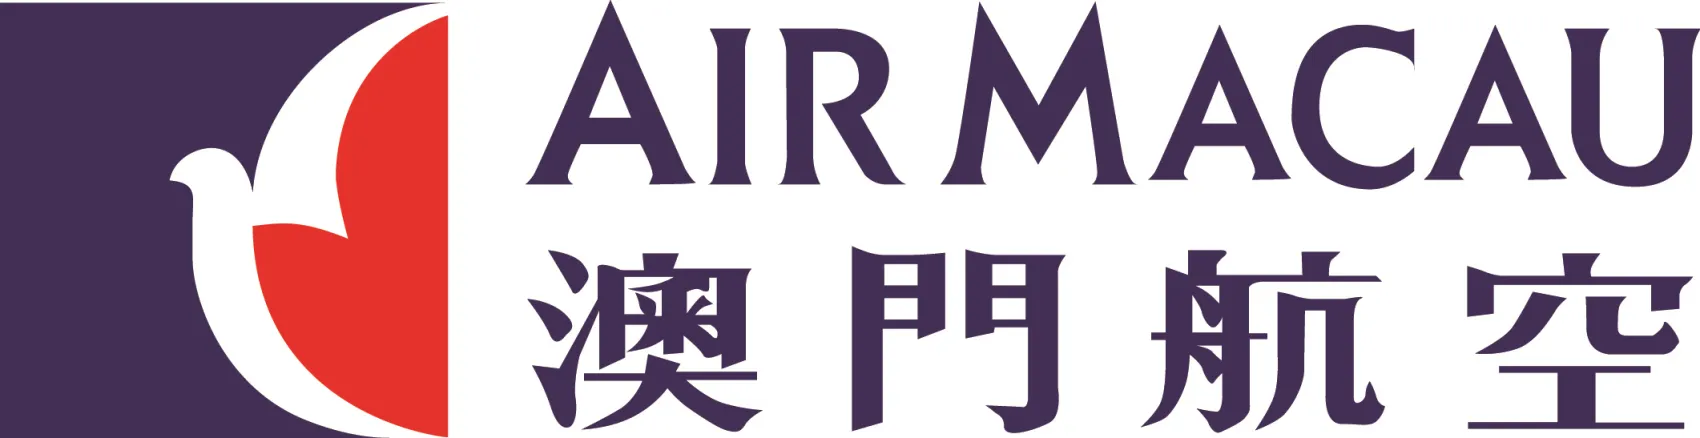 air-macau-logo